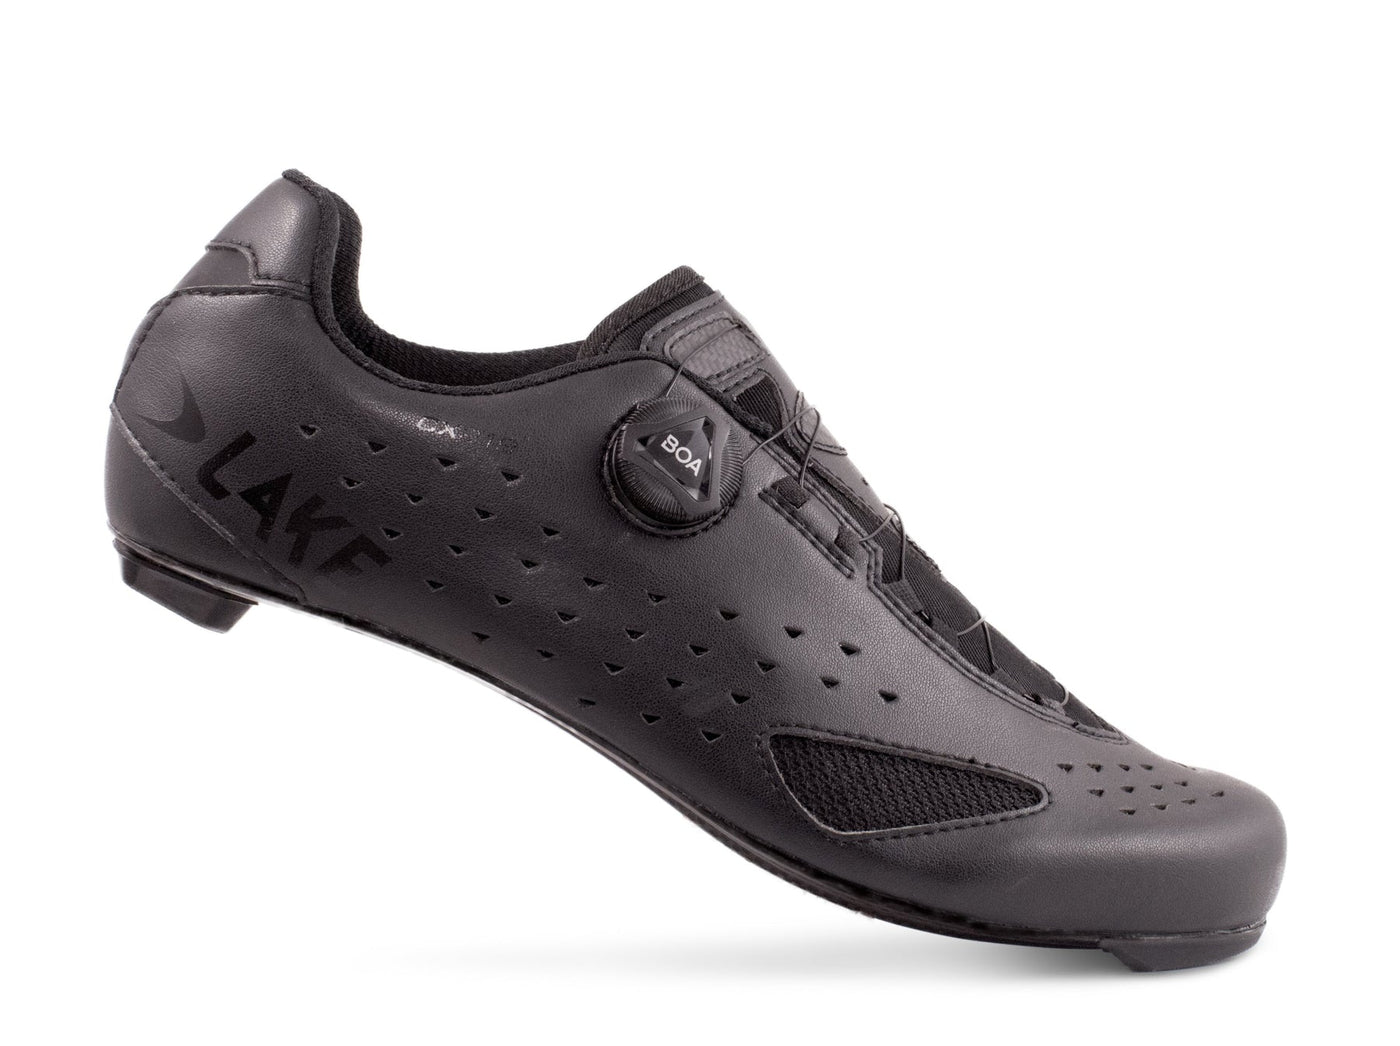 Lake CX219 Road Cycling Shoes (Black)